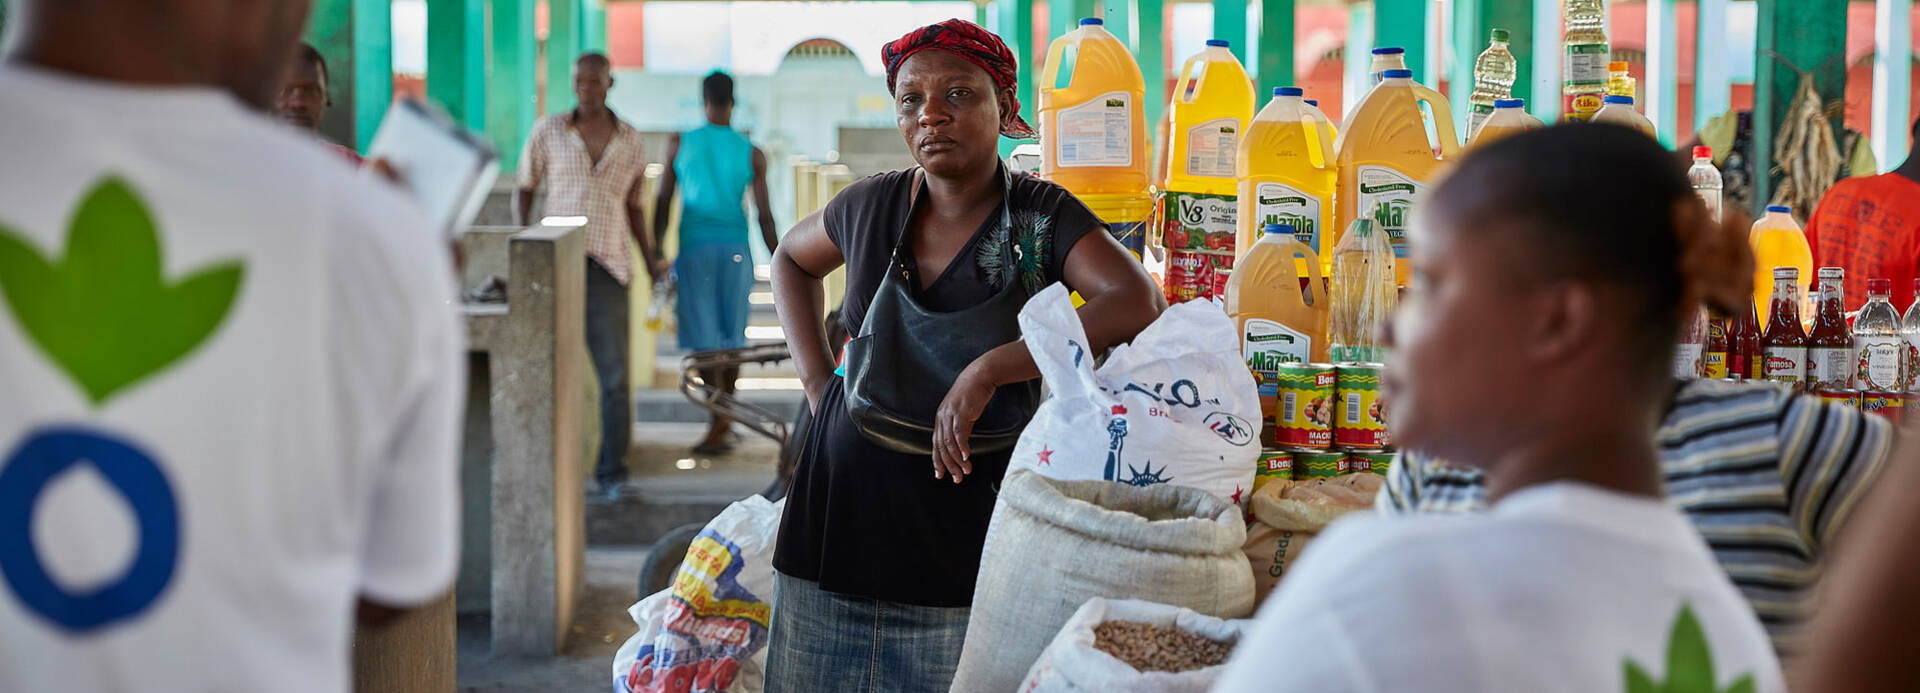 Mitarbeitende von Aktion gegen den Hunger im Einsatz in Haiti